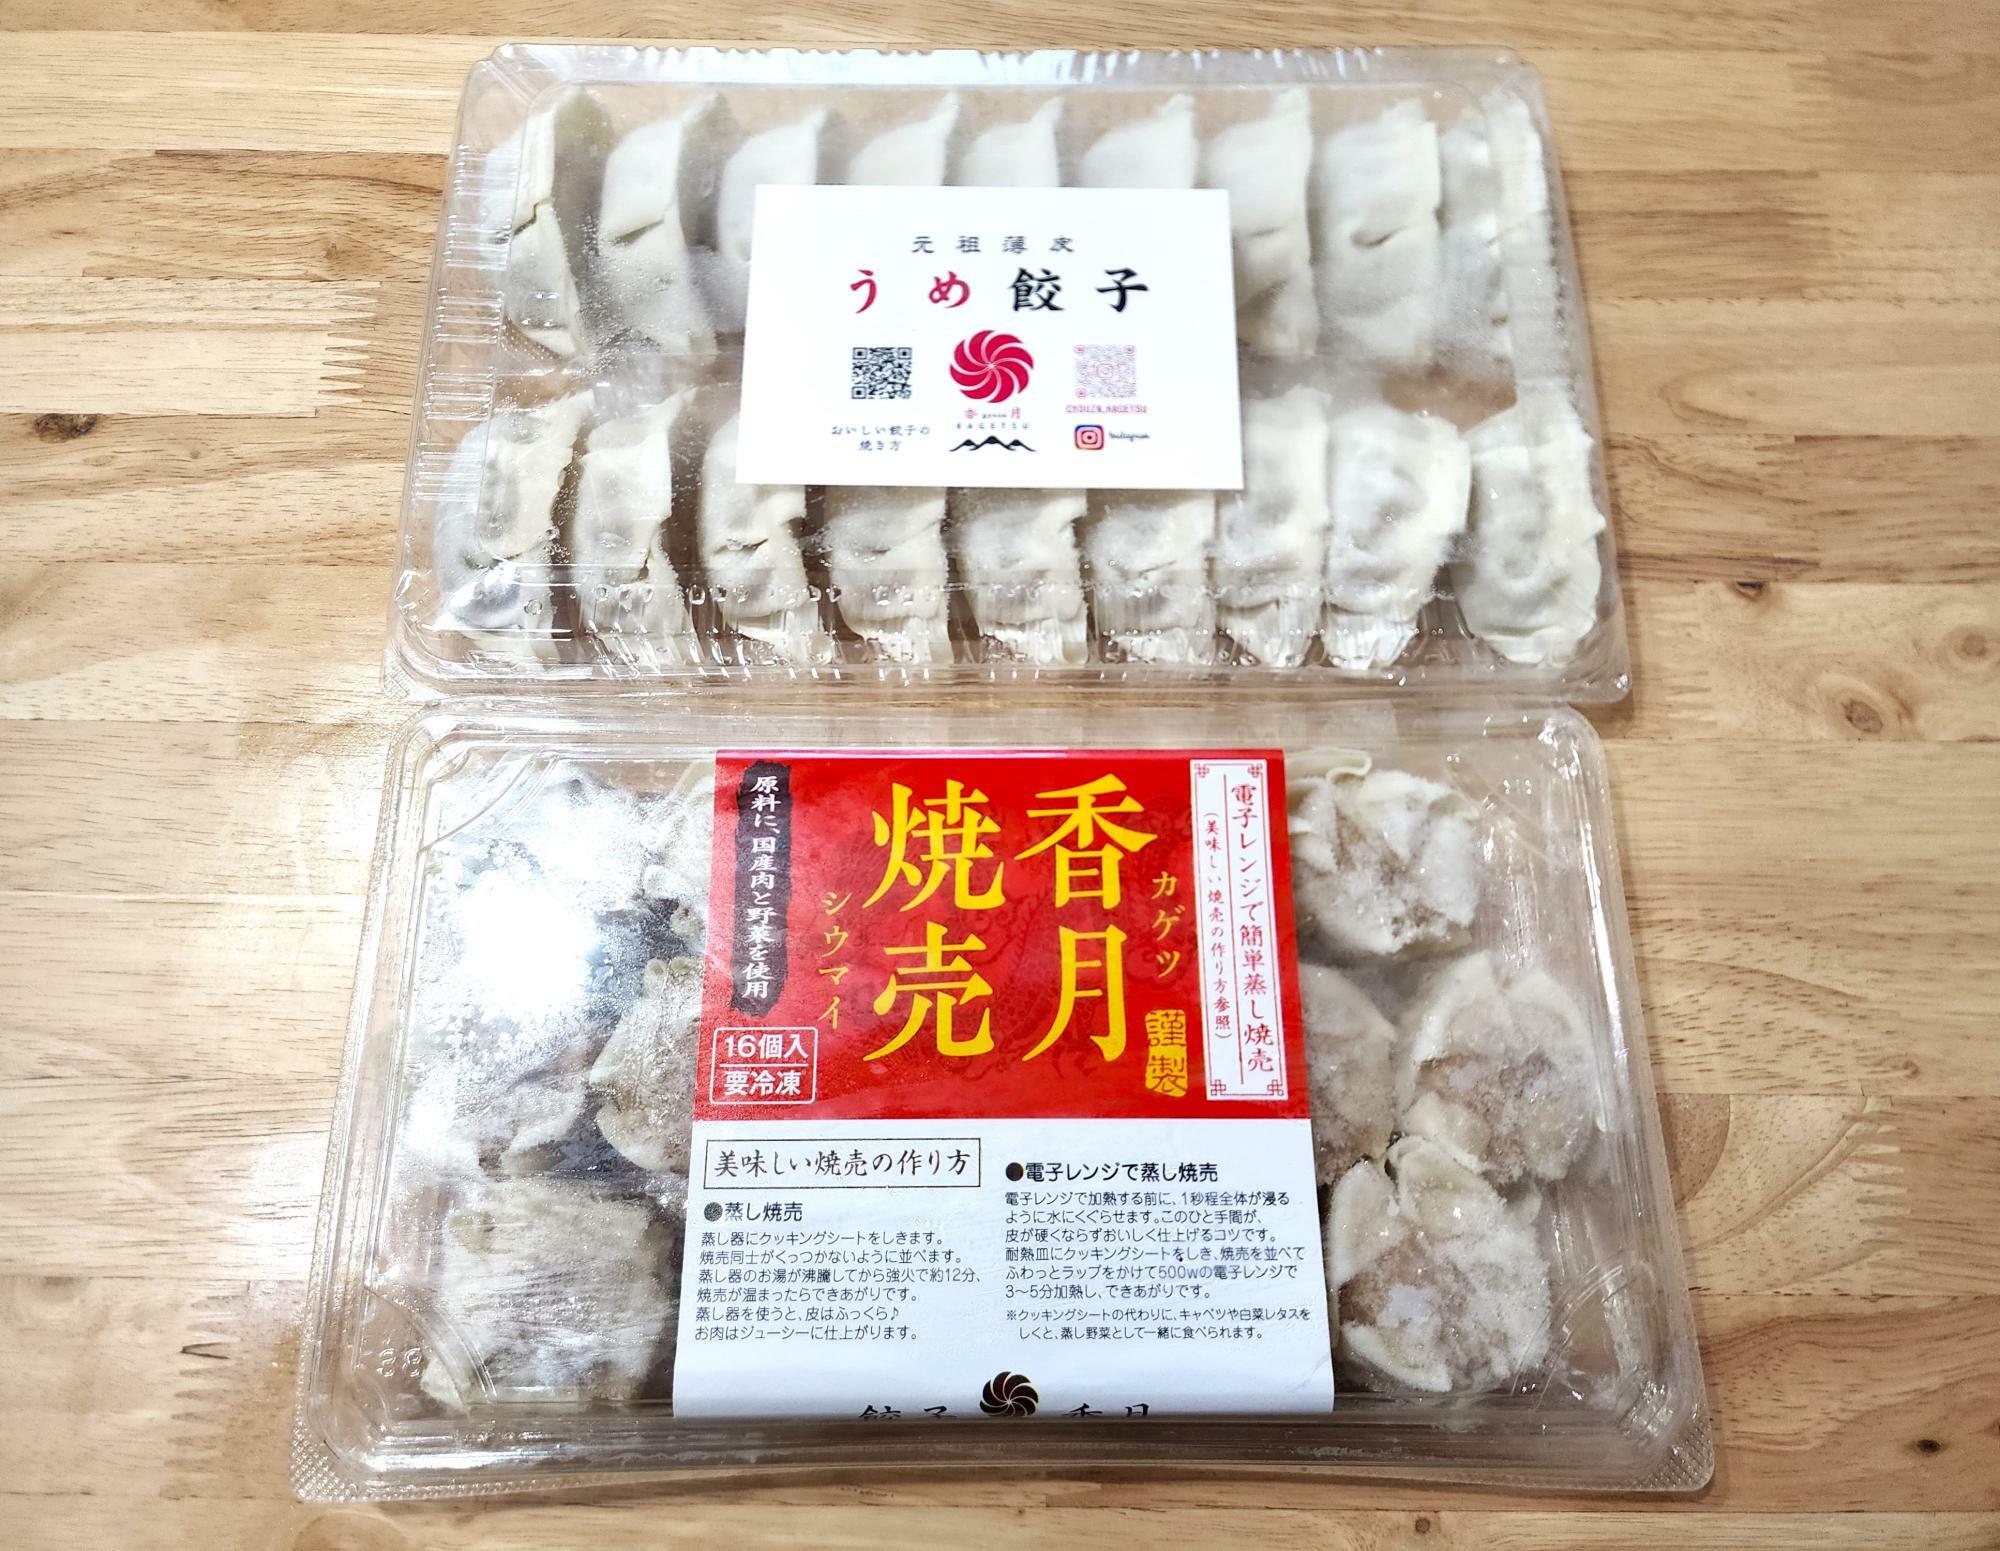 「餃子香月 国府府中店」で購入した「香月焼売＆うめ餃子」のセット。